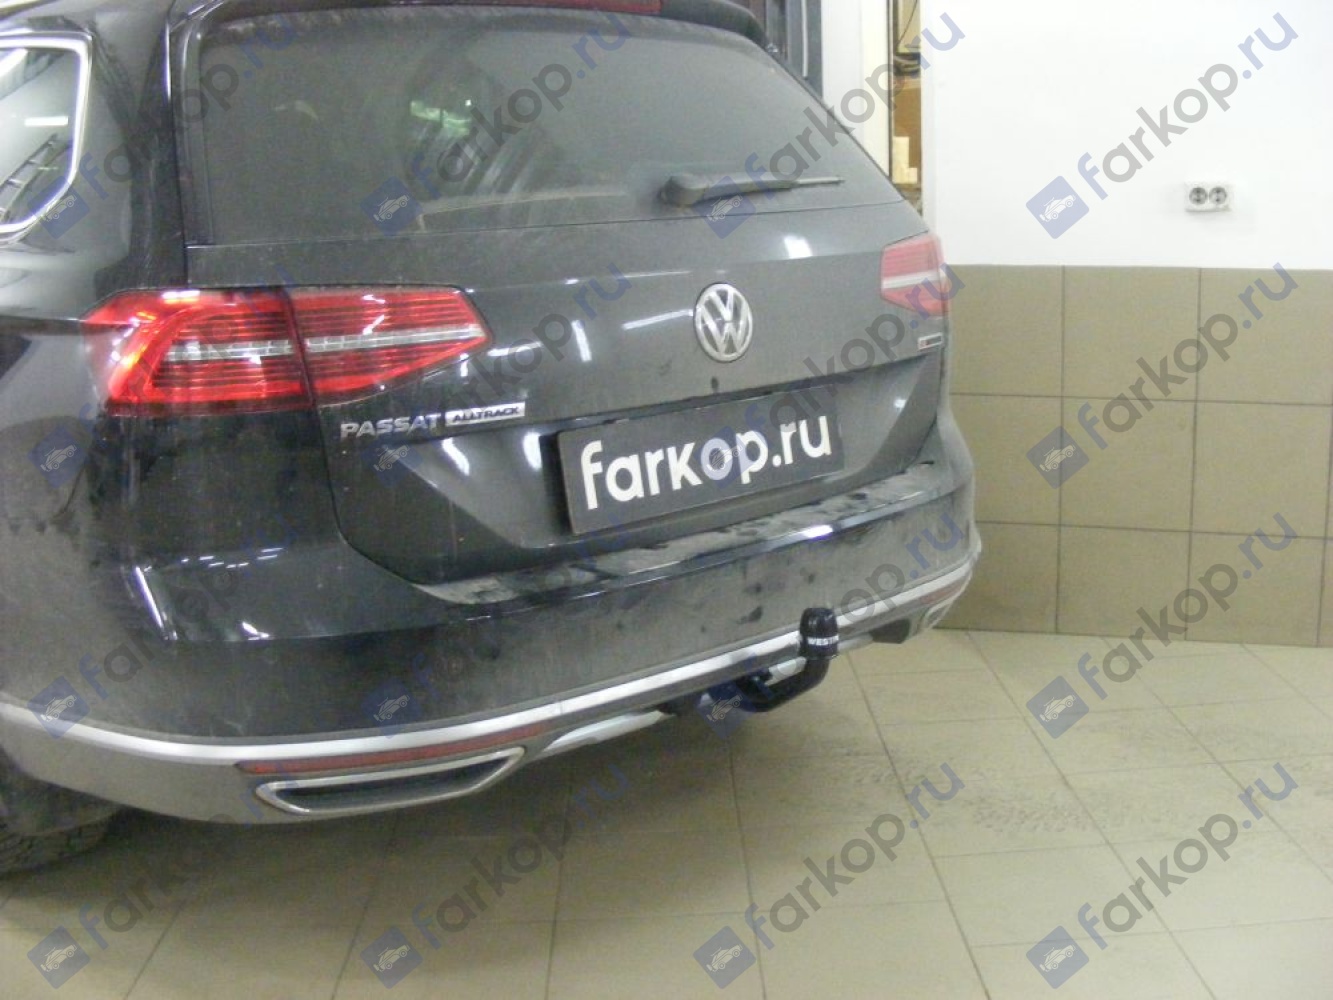 Фаркоп Westfalia для Volkswagen Passat (седан, универсал, вкл. Alltrack) 2014- 317141600001 в 